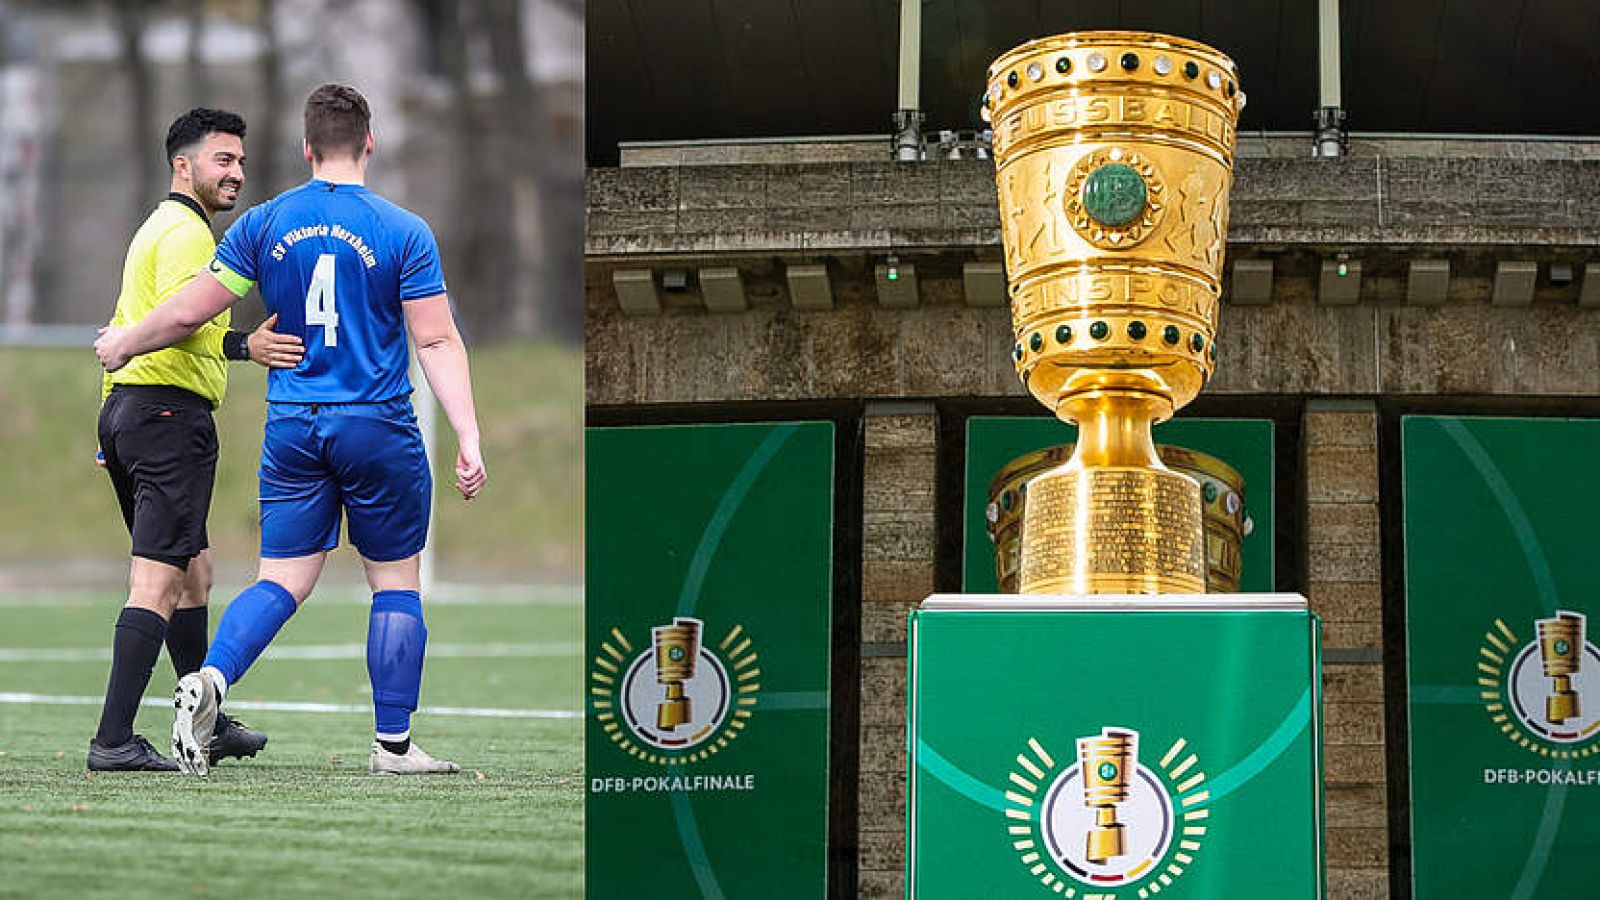 Unvergessliches Wochenende beim DFB-Pokalfinale in Berlin gewinnen: Jetzt bewerben!